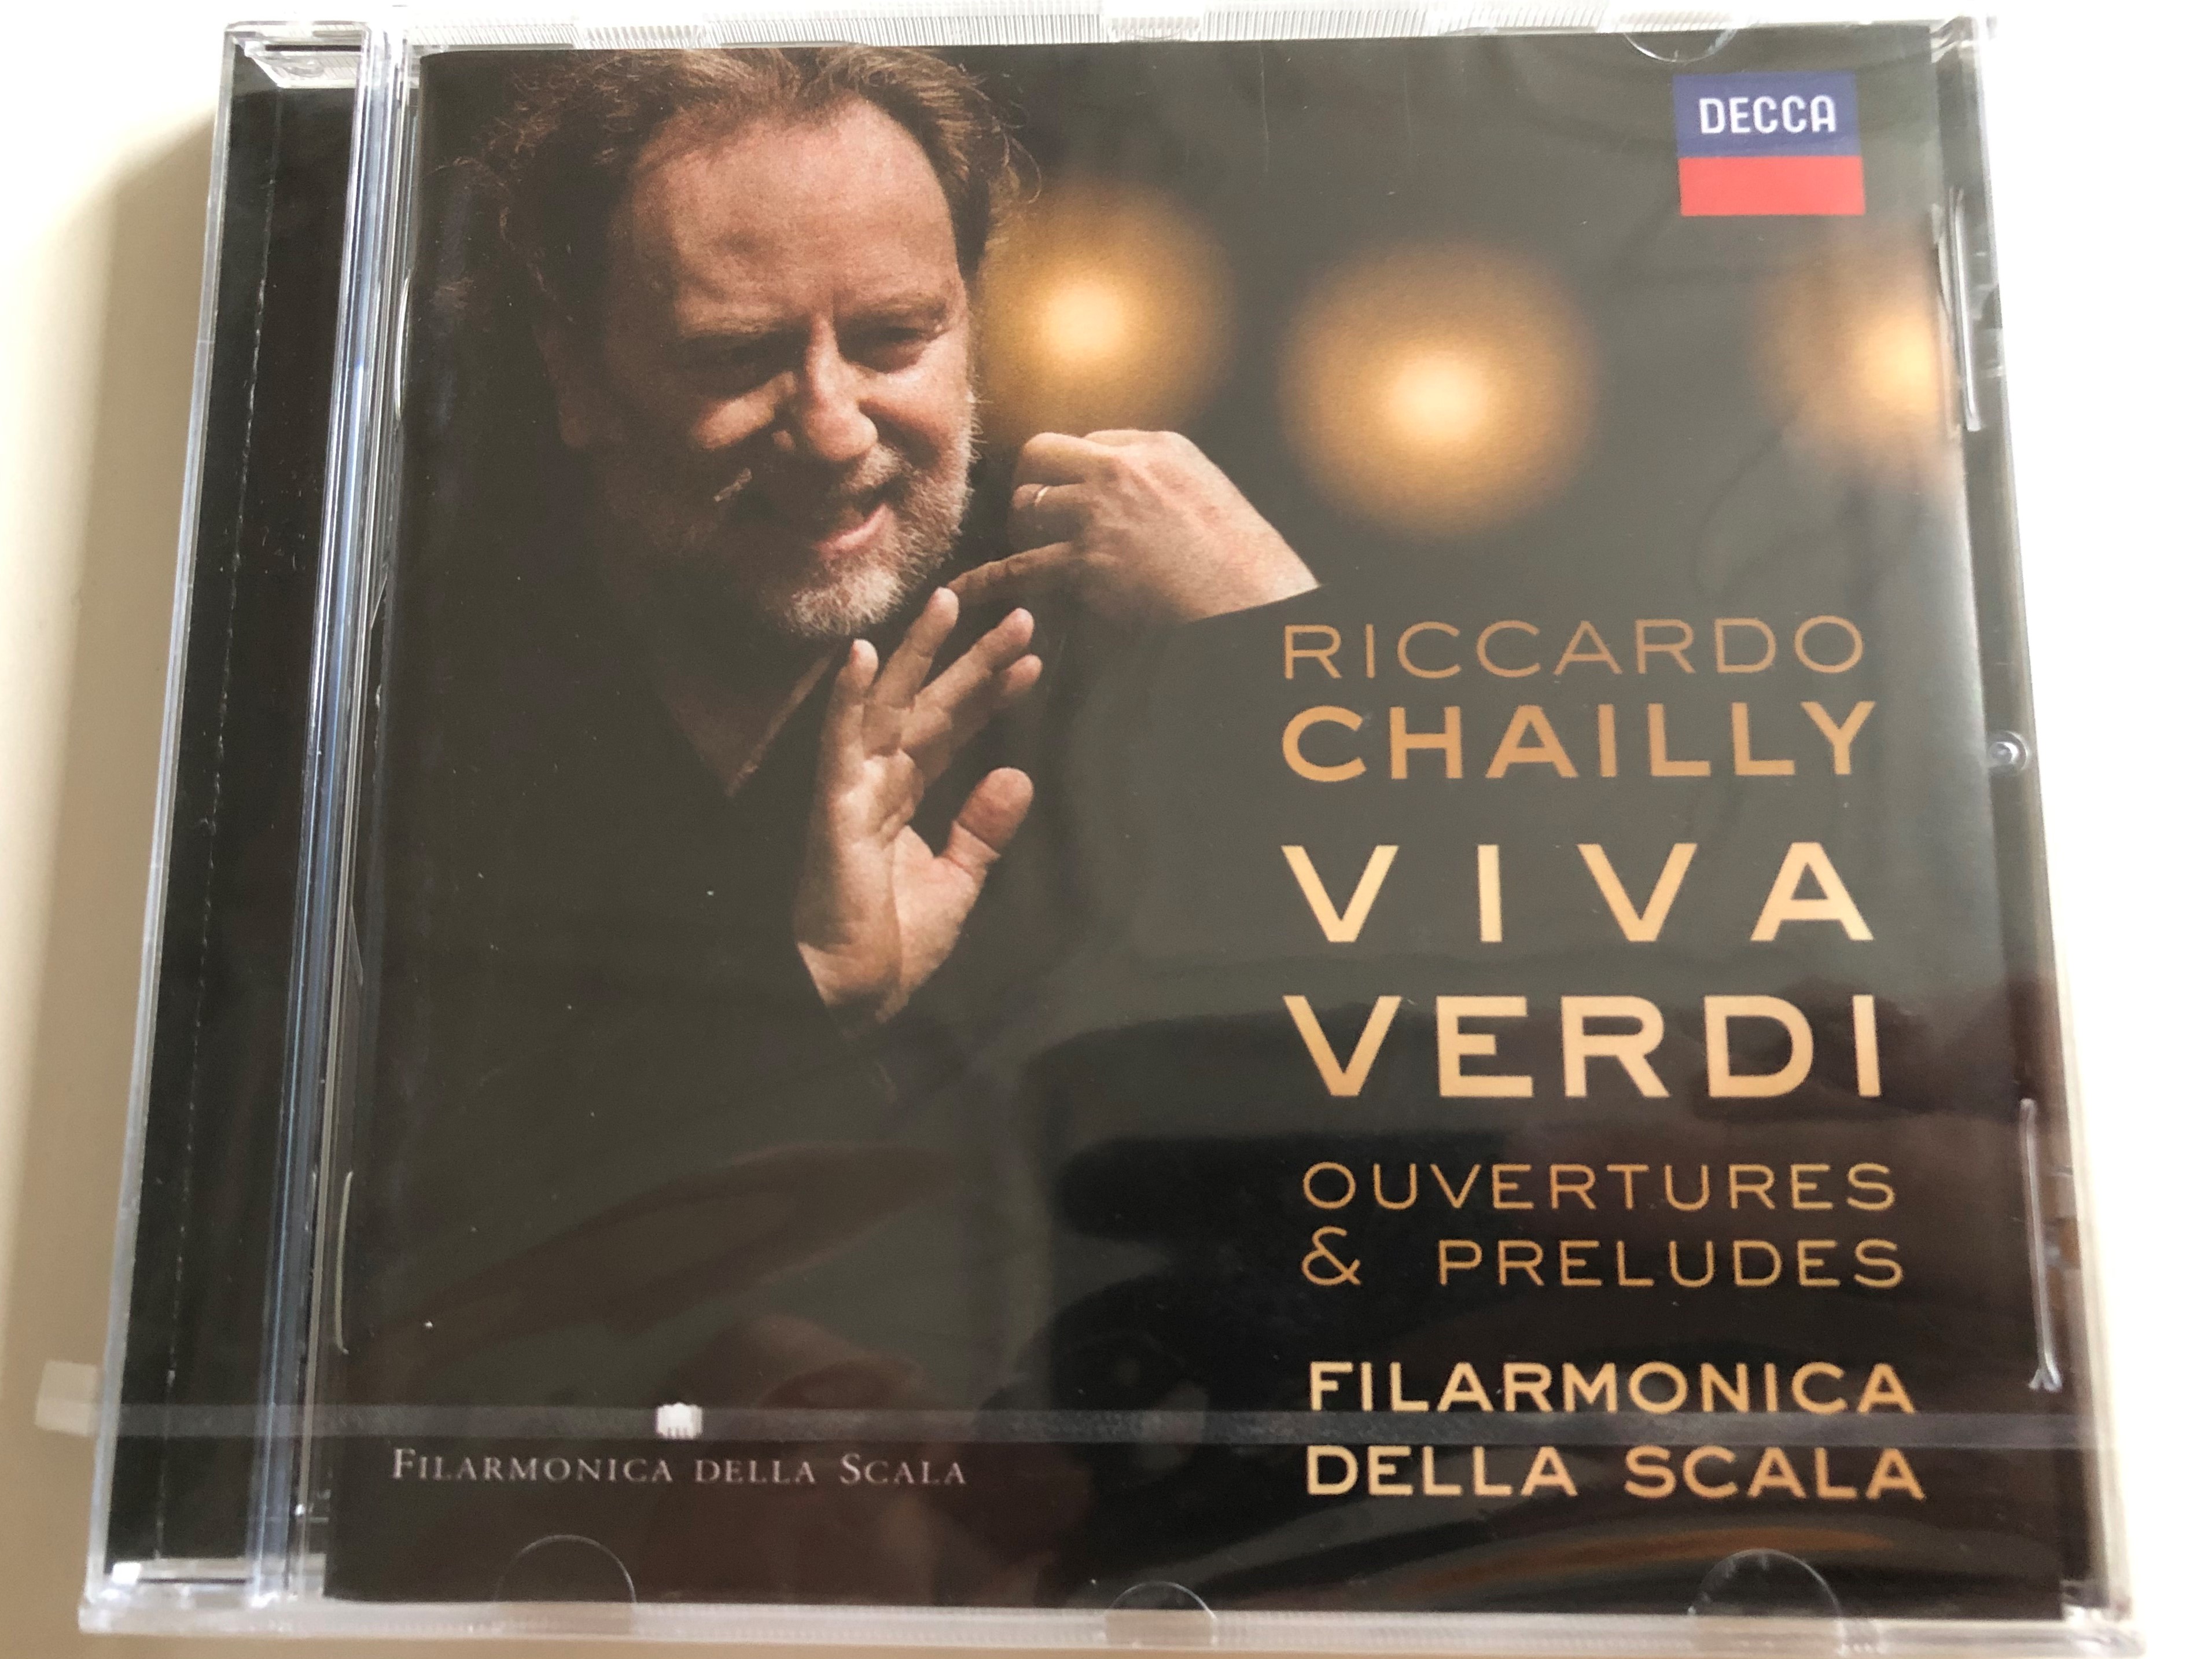 riccardo-chailly-viva-verdi-ouvertures-preludes-filarmonica-della-scala-audio-cd-2012-478-5162-decca-1-.jpg